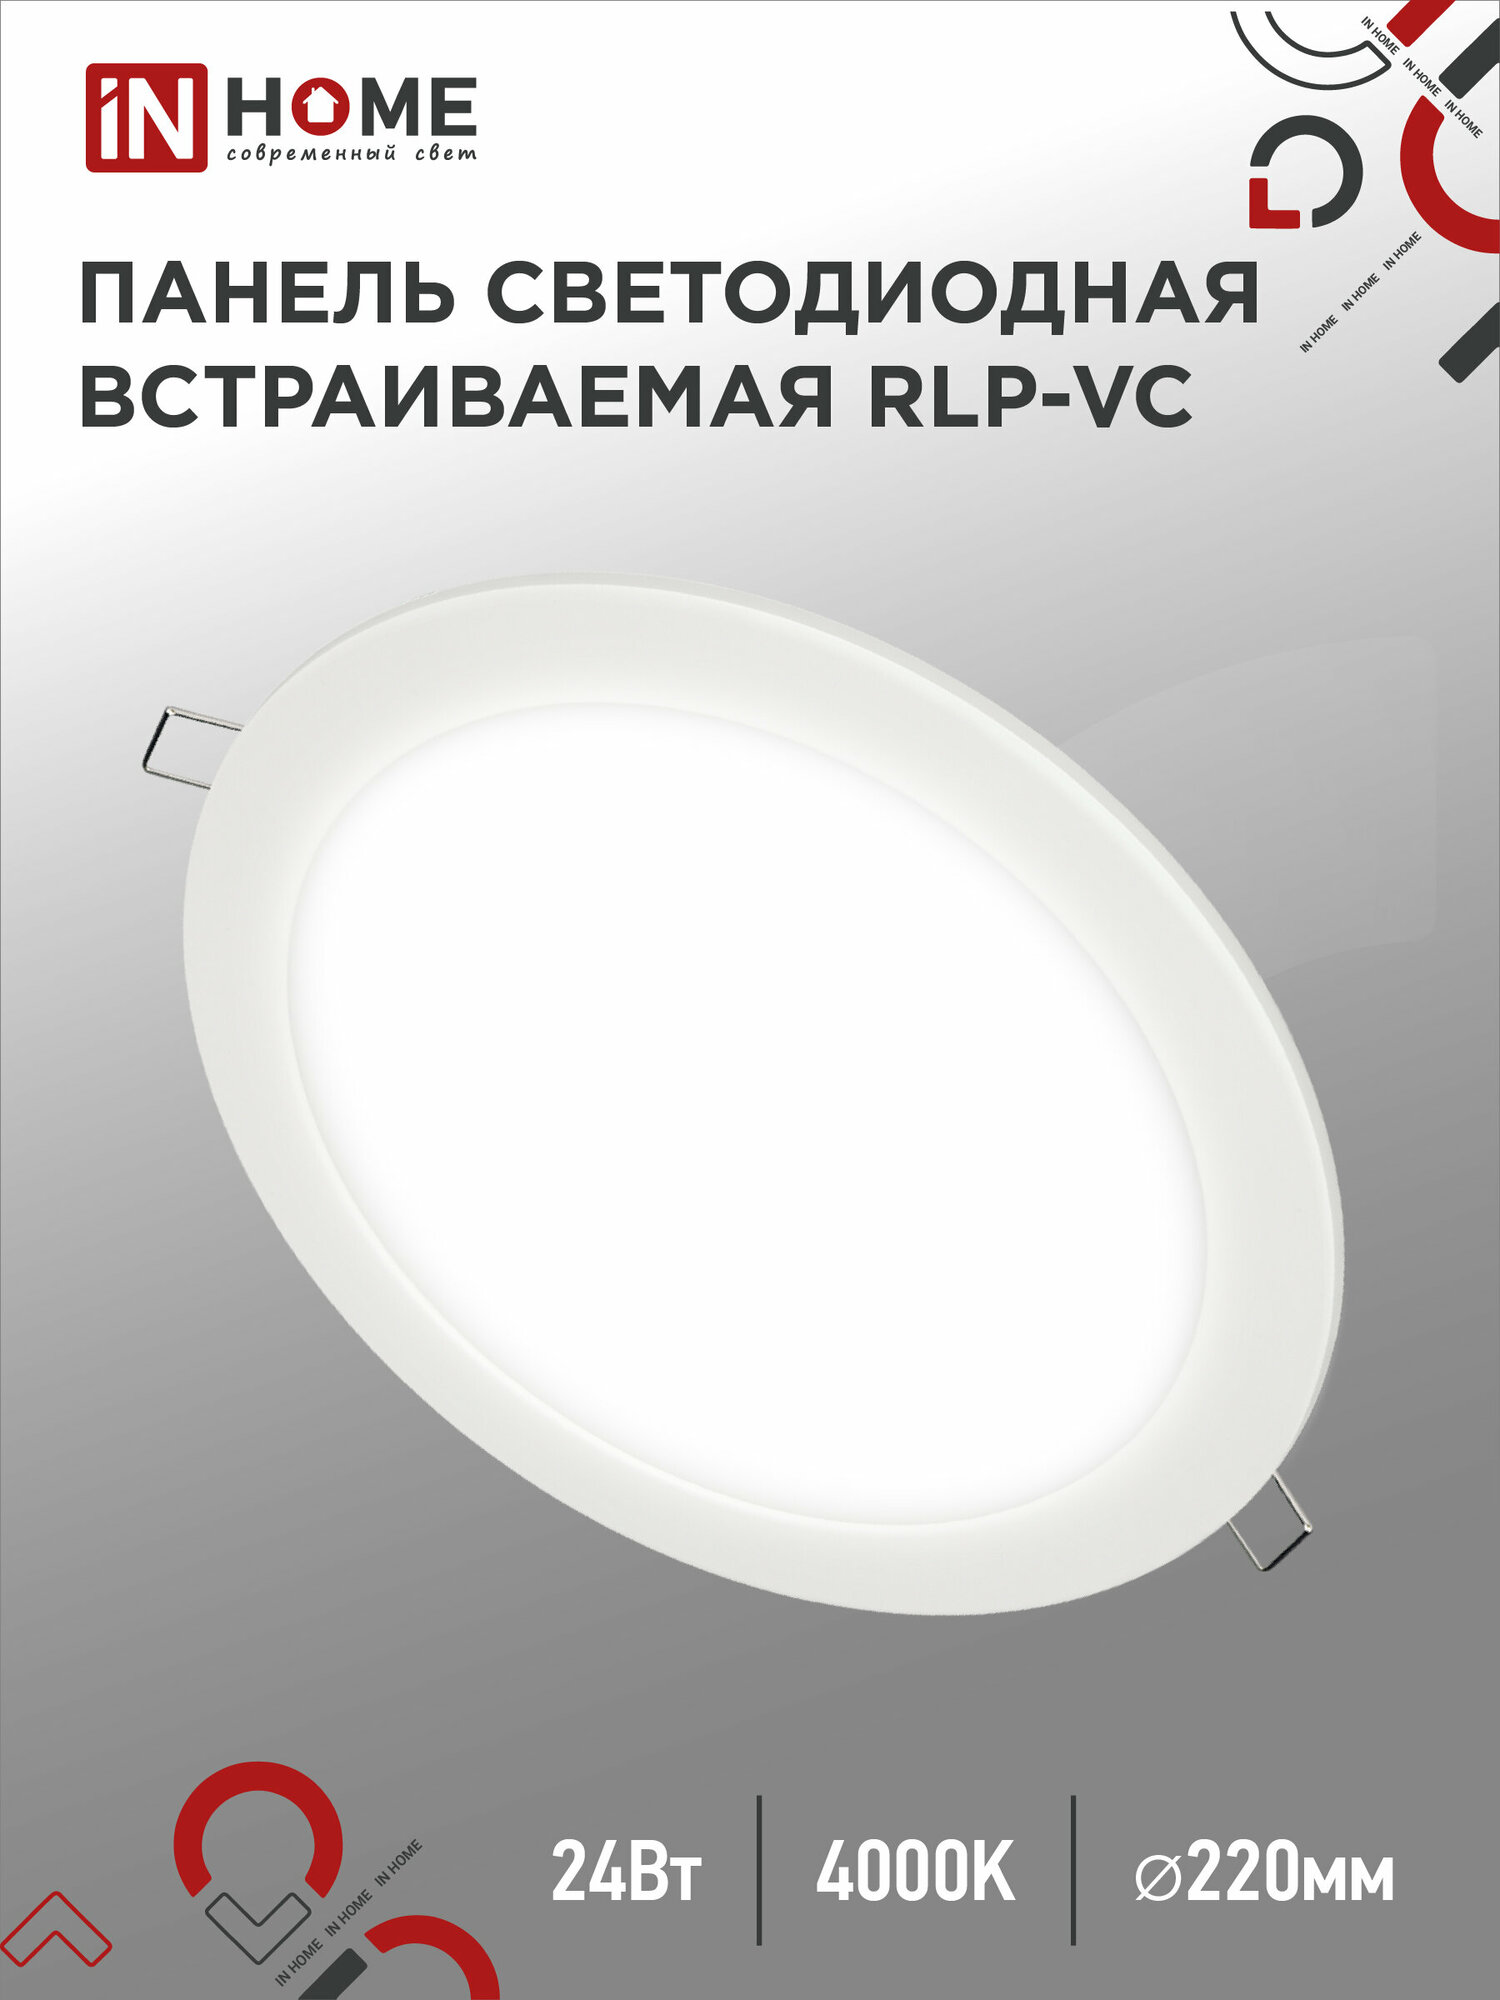 Панель светодиодная встраиваемая круглая RLP-VC 24Вт 230В 4000К 1920Лм 200мм белая IP40 IN HOME